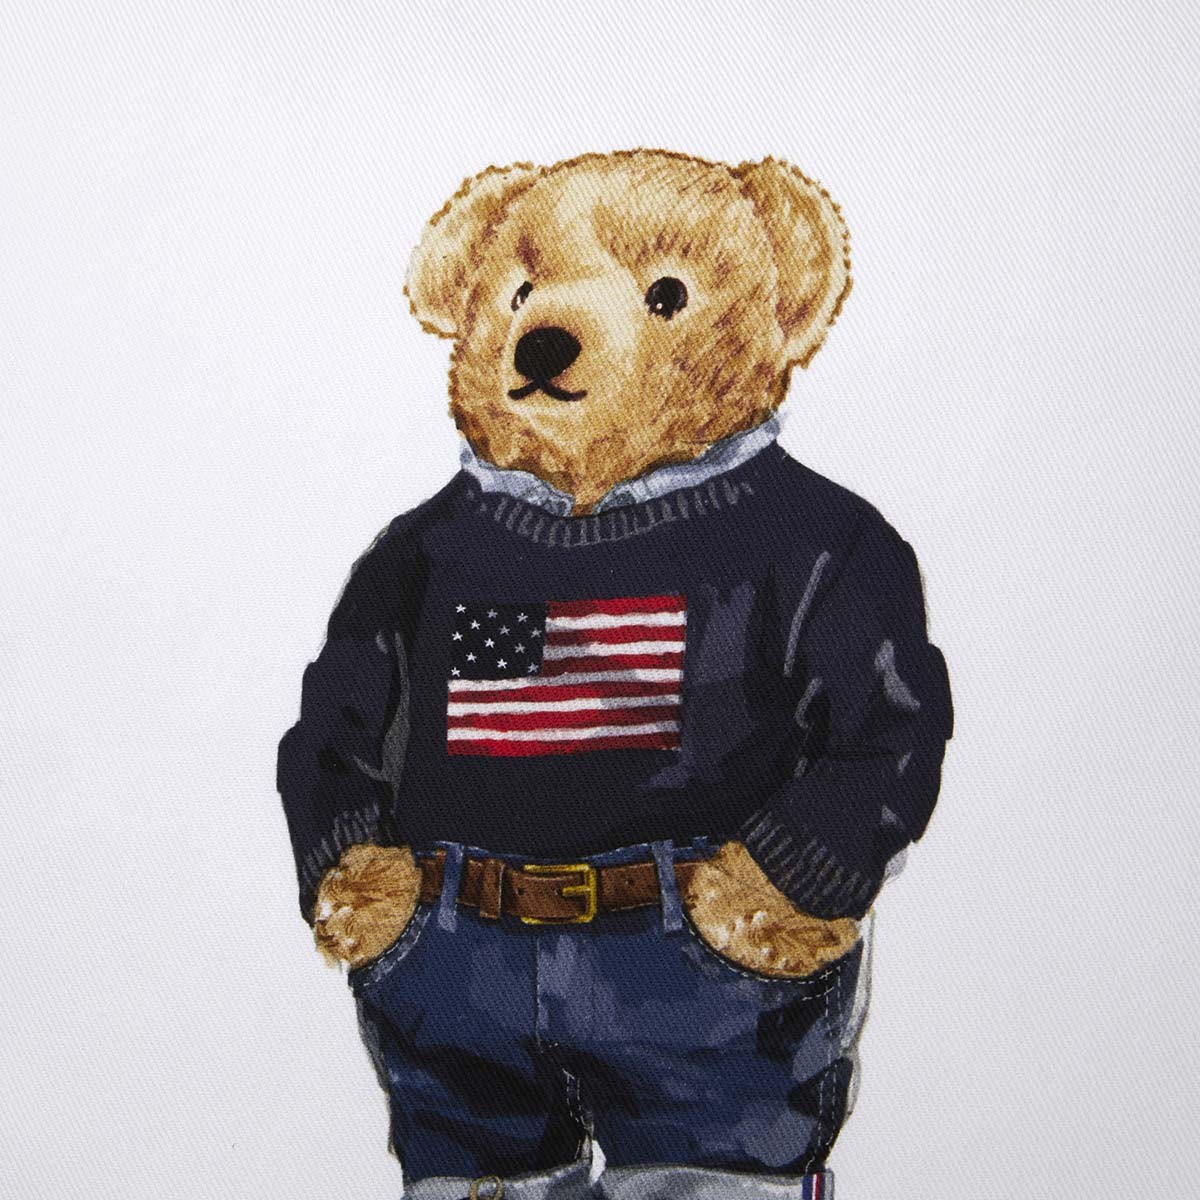 Kussen Ralph Lauren Flag Sweater Bear